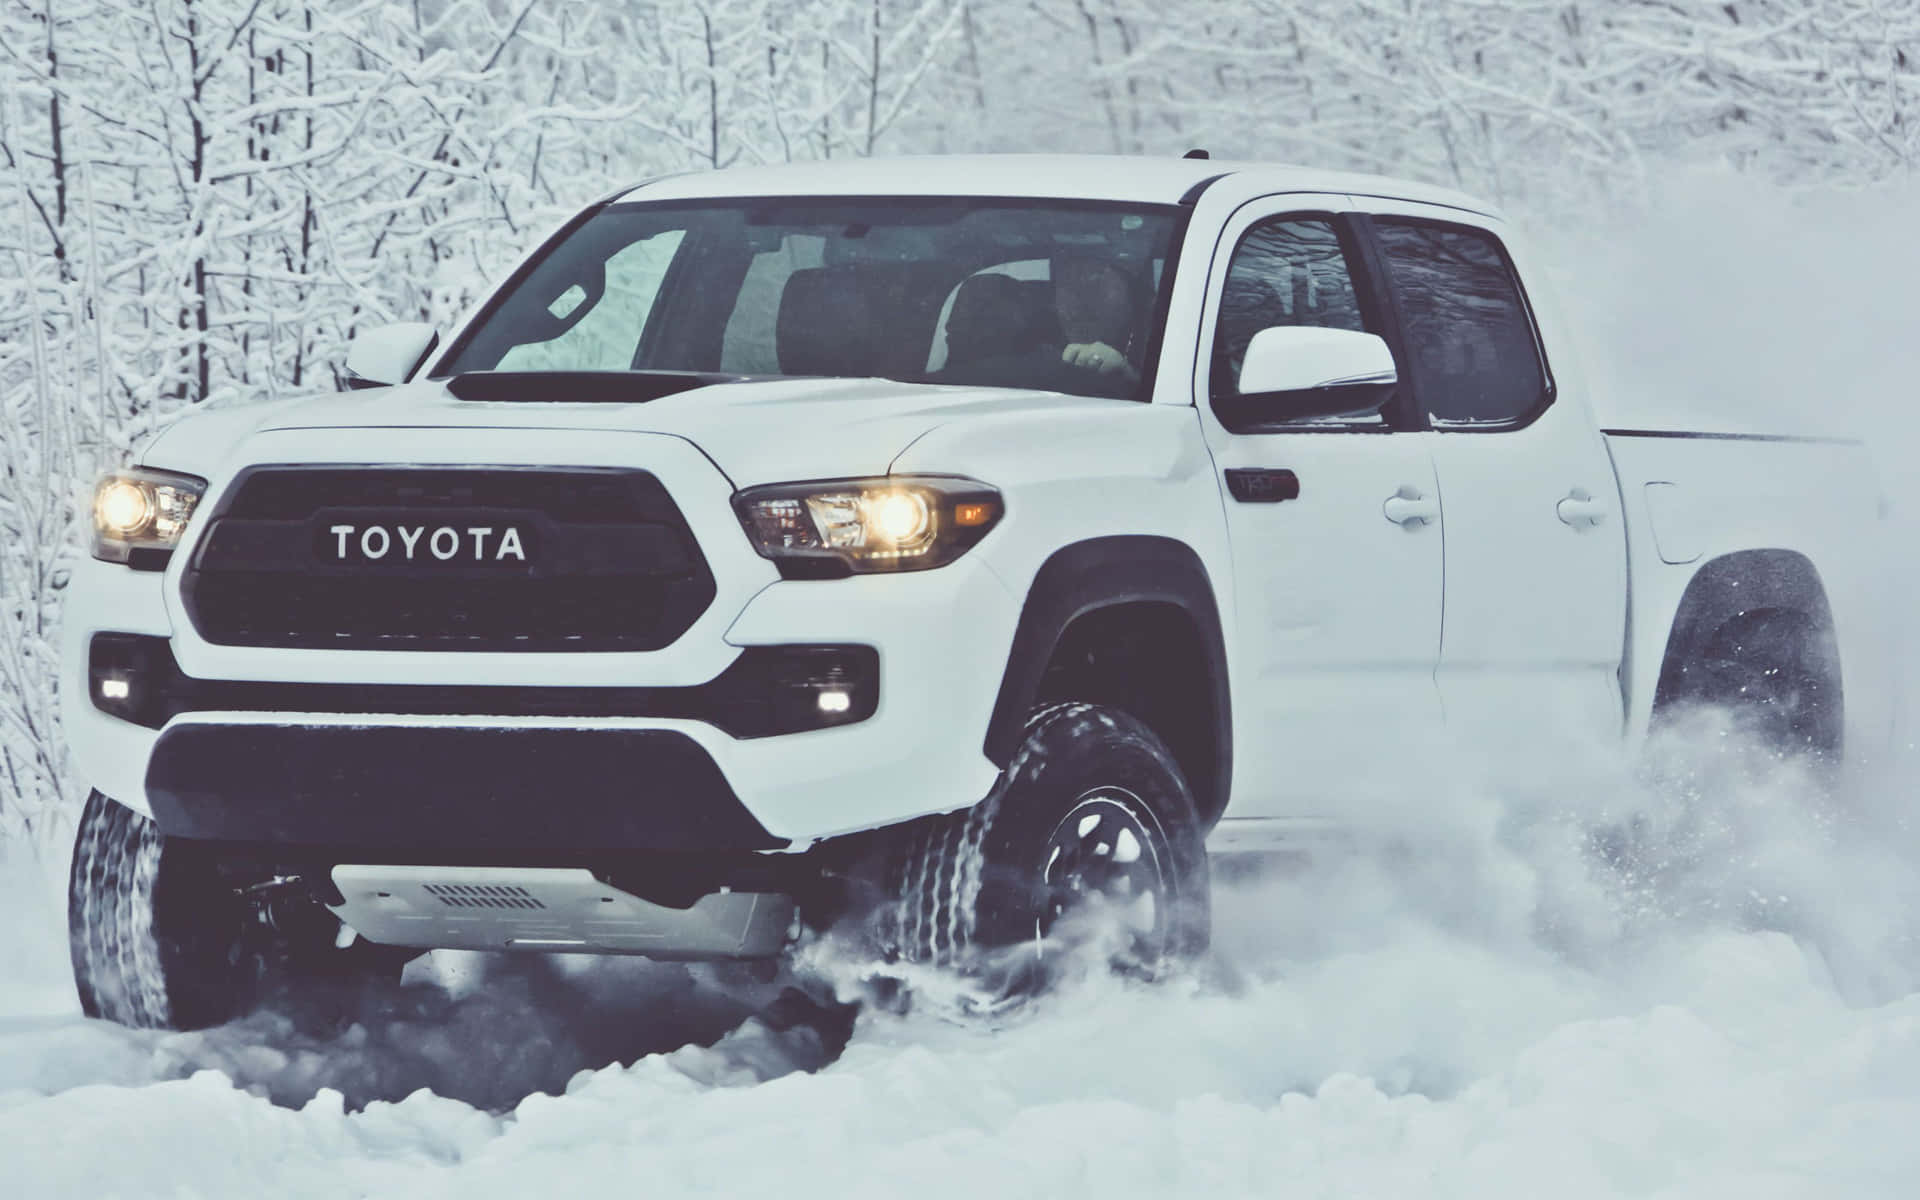 Zoomind På Et Glimt Af Toyotas Historie